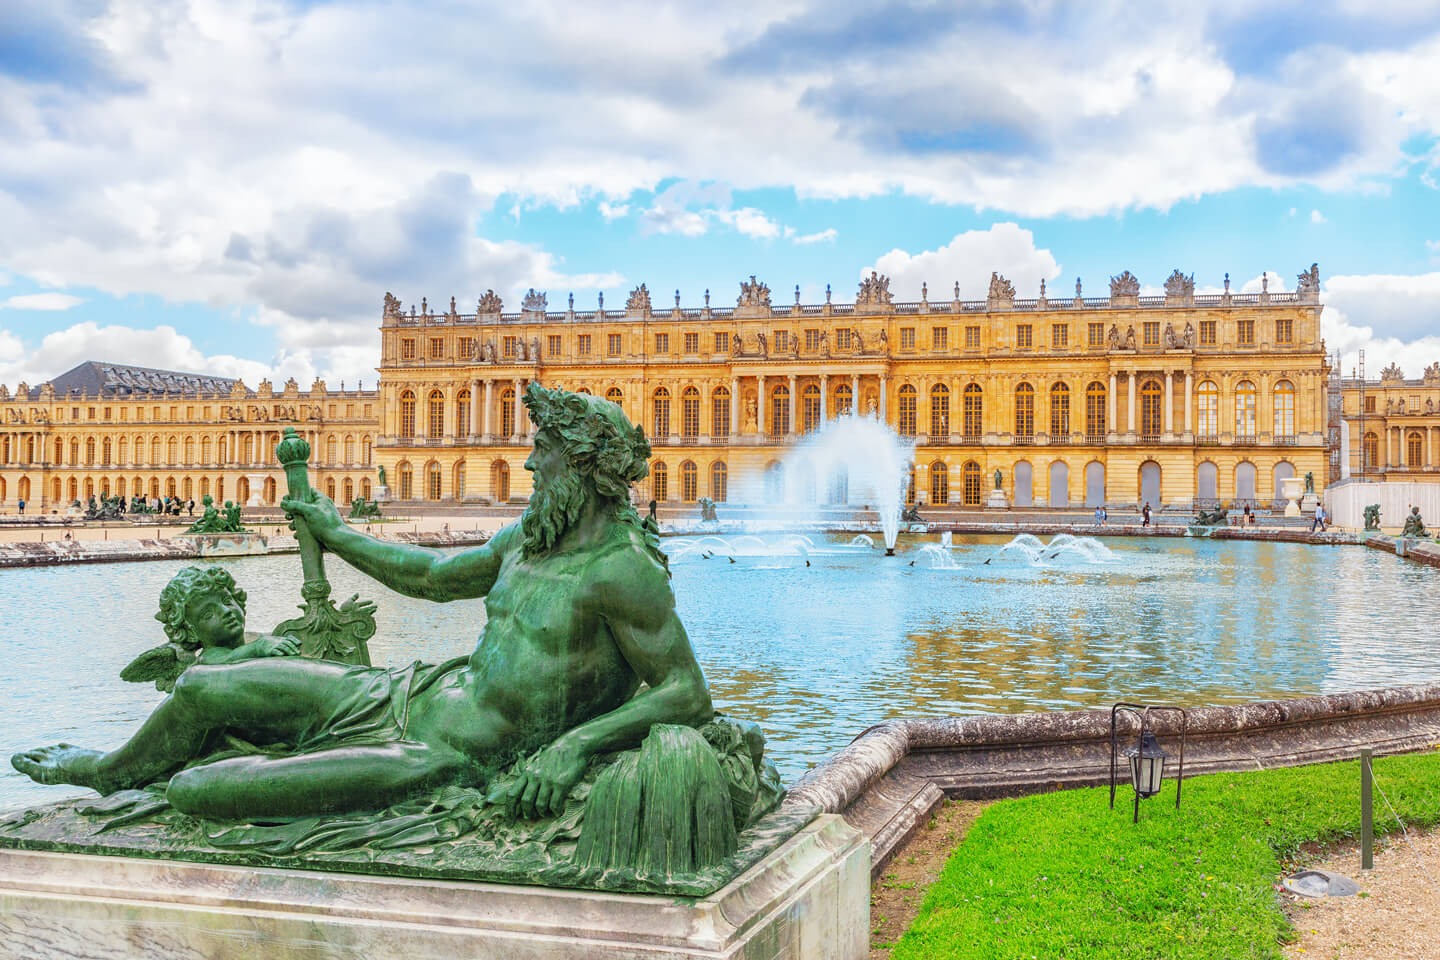 # Versailles Palace